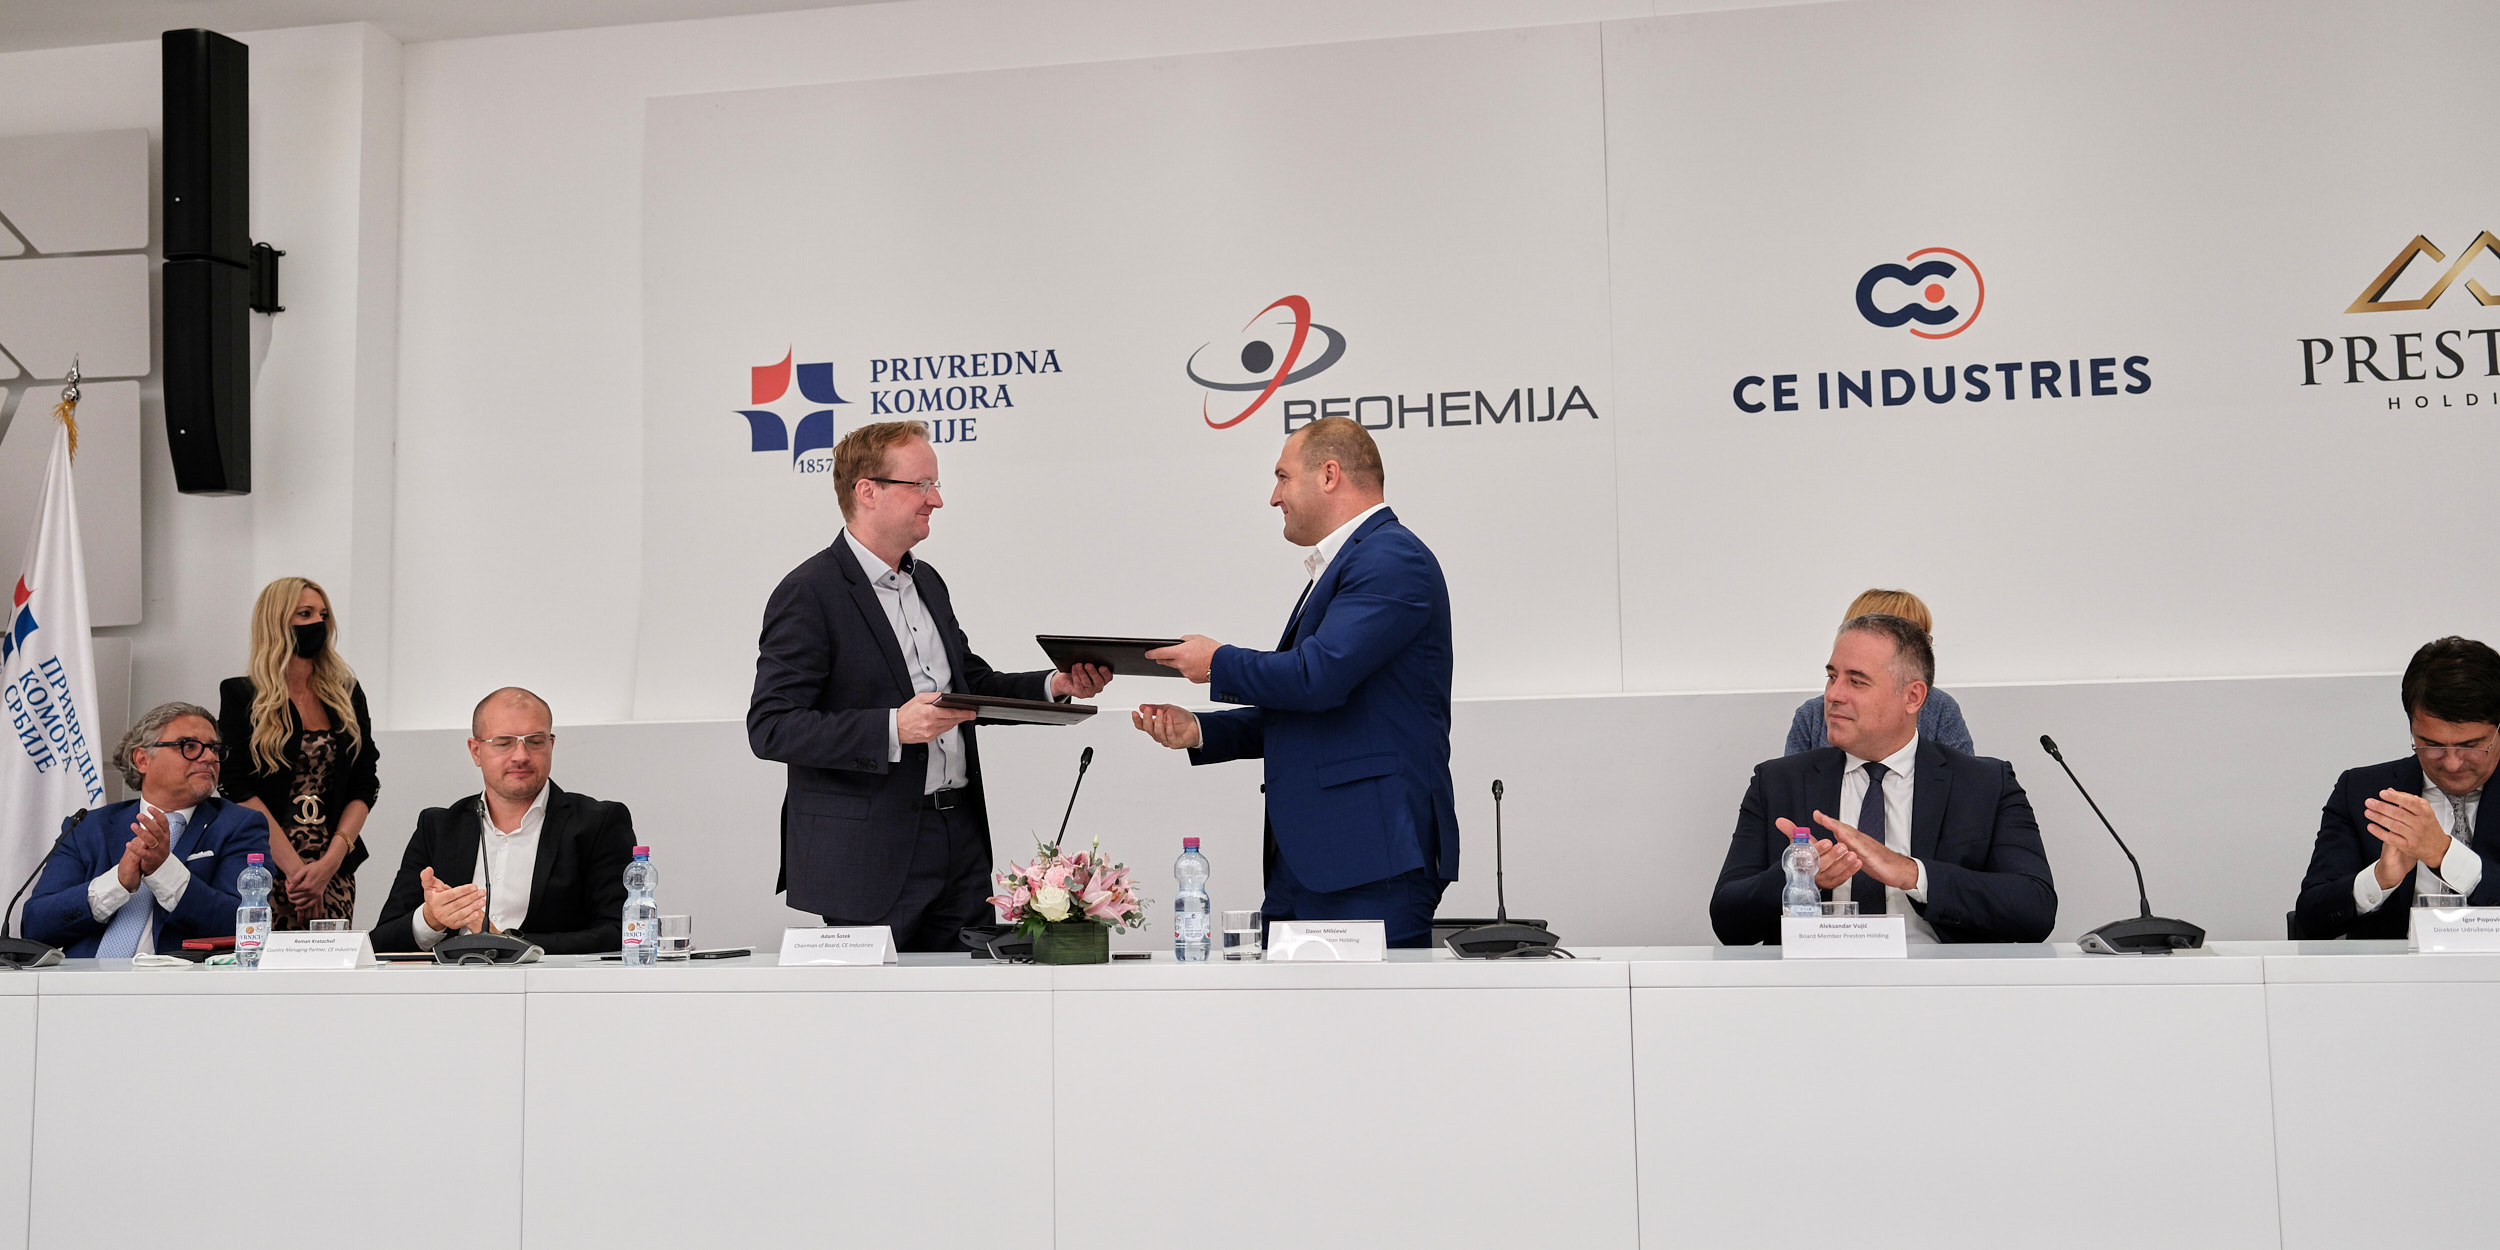 CE Industries kupuje srbského výrobce pracích prášků, společnost Beohemija